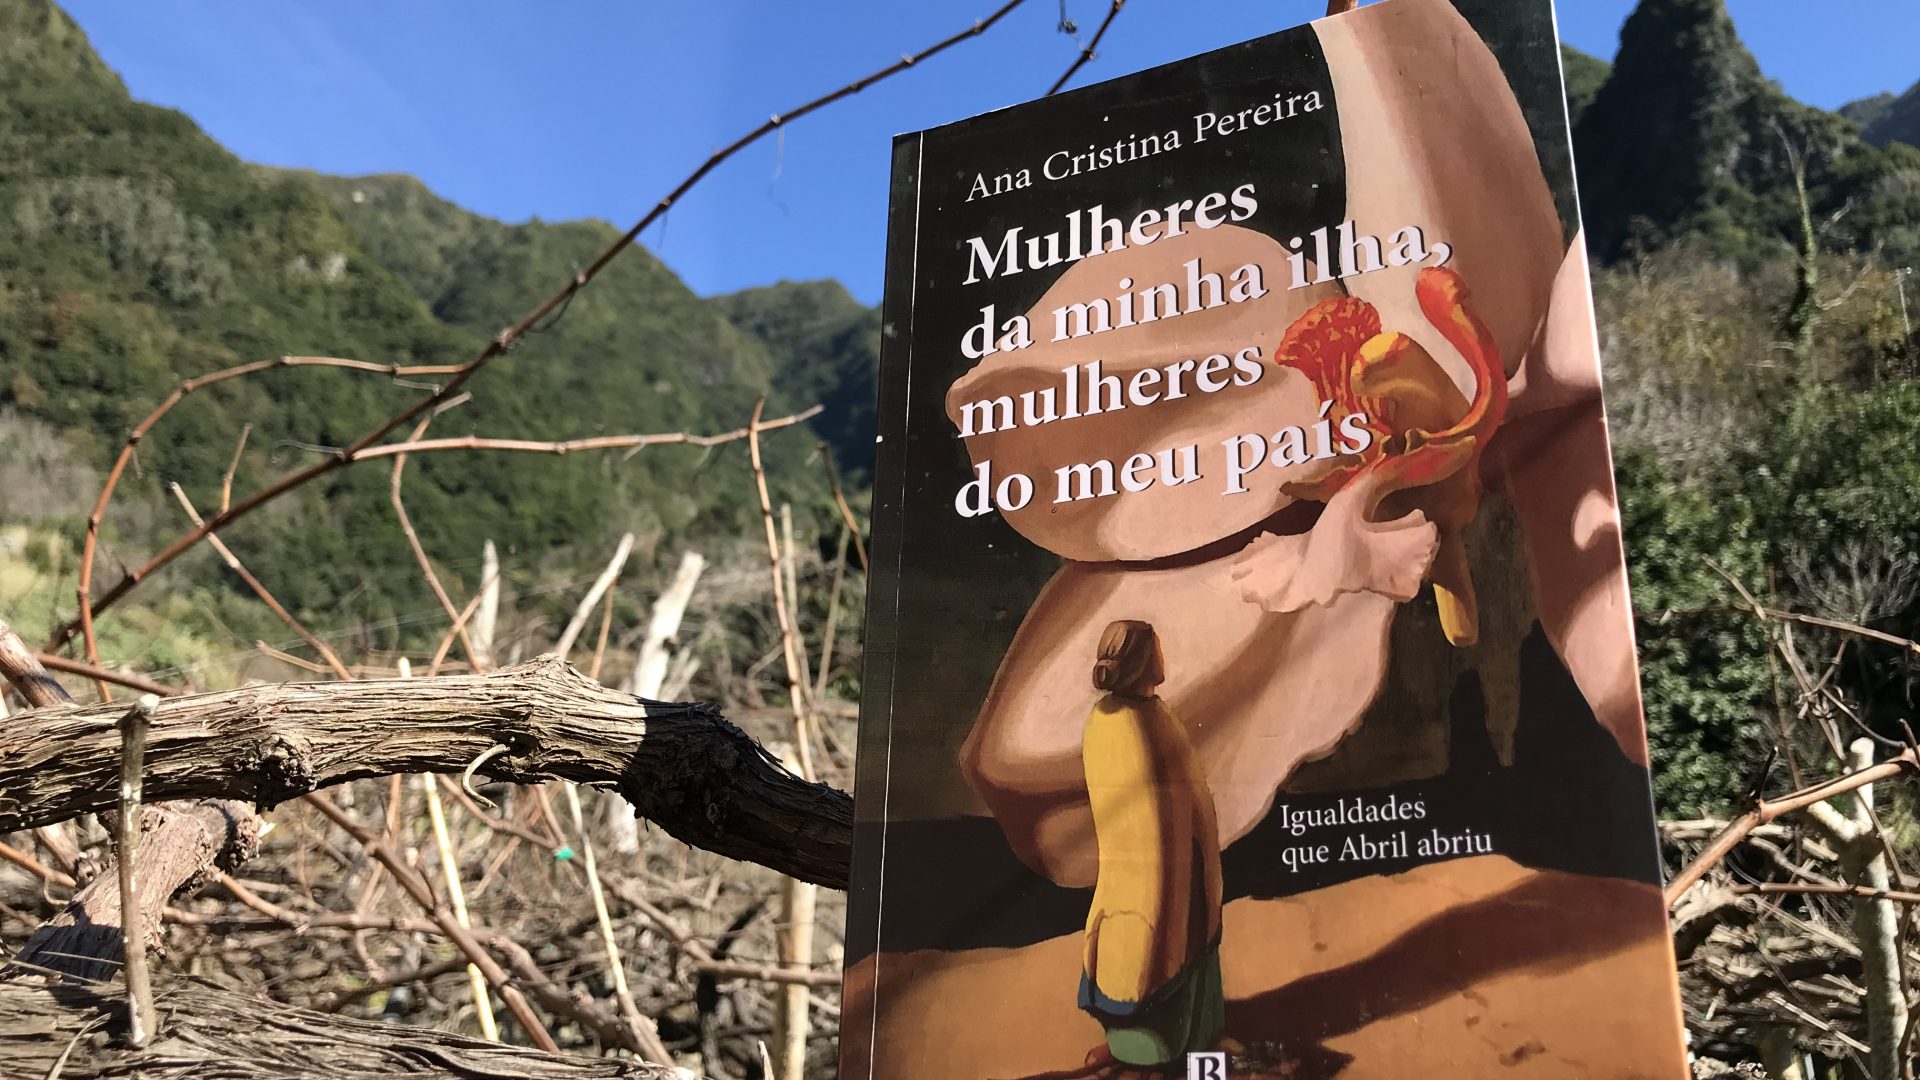 Presentation of the book Mulheres da minha Ilha, Mulheres do Meu País, by Ana Cristina Pereira, by Rosa Monteiro